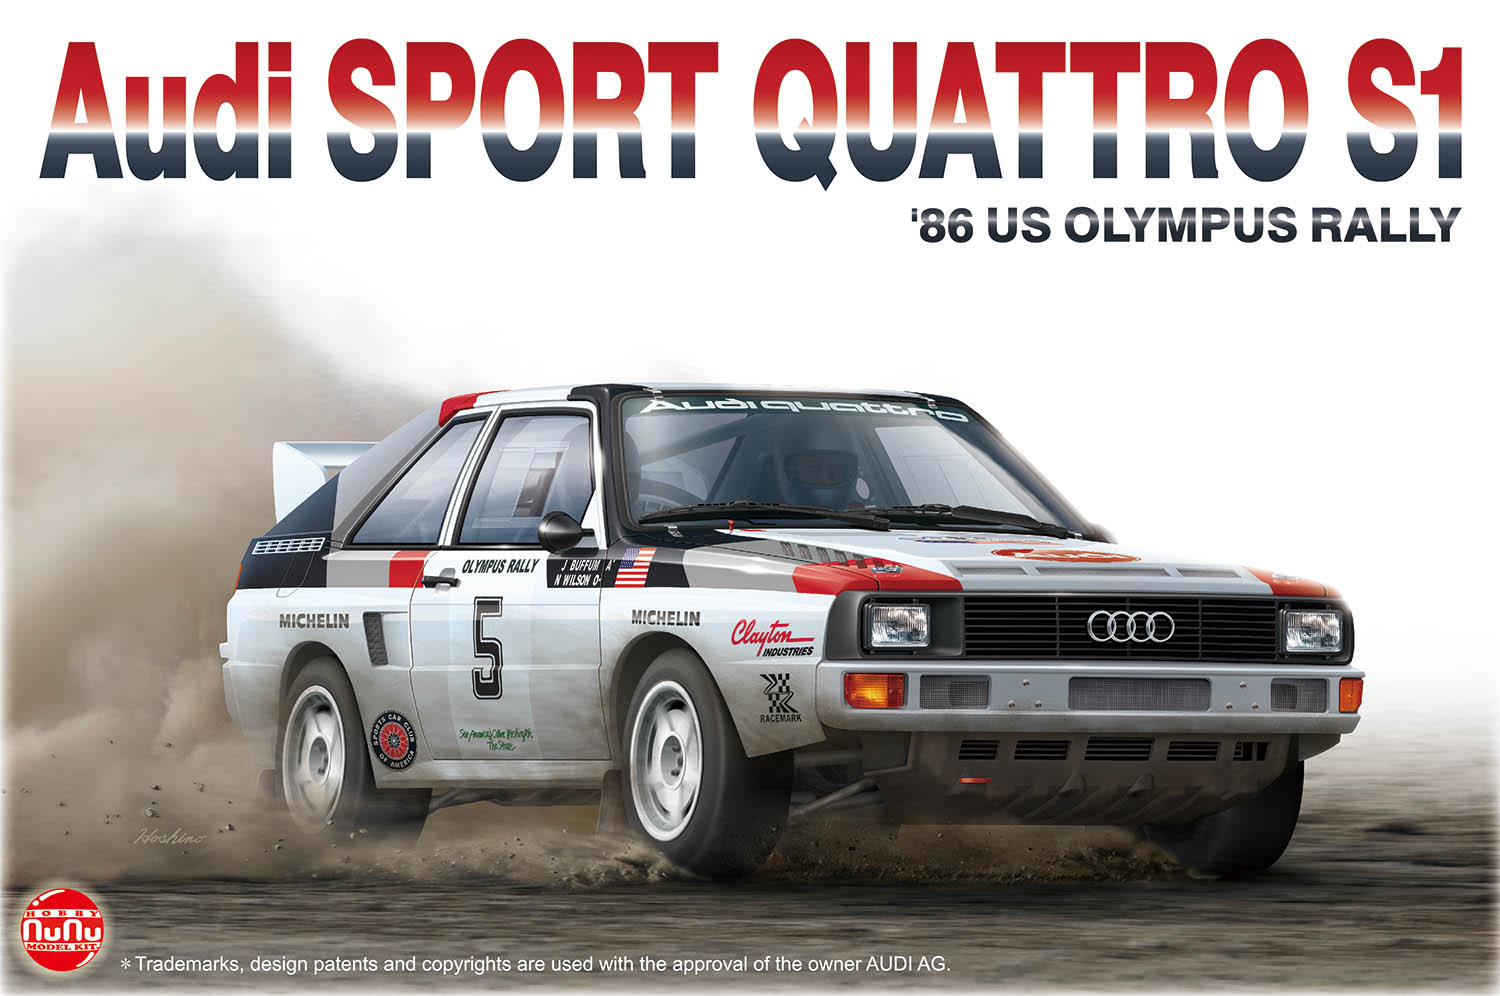 1/24レーシングシリーズ アウディ スポーツクワトロ S1 1986 US オリンパスラリー